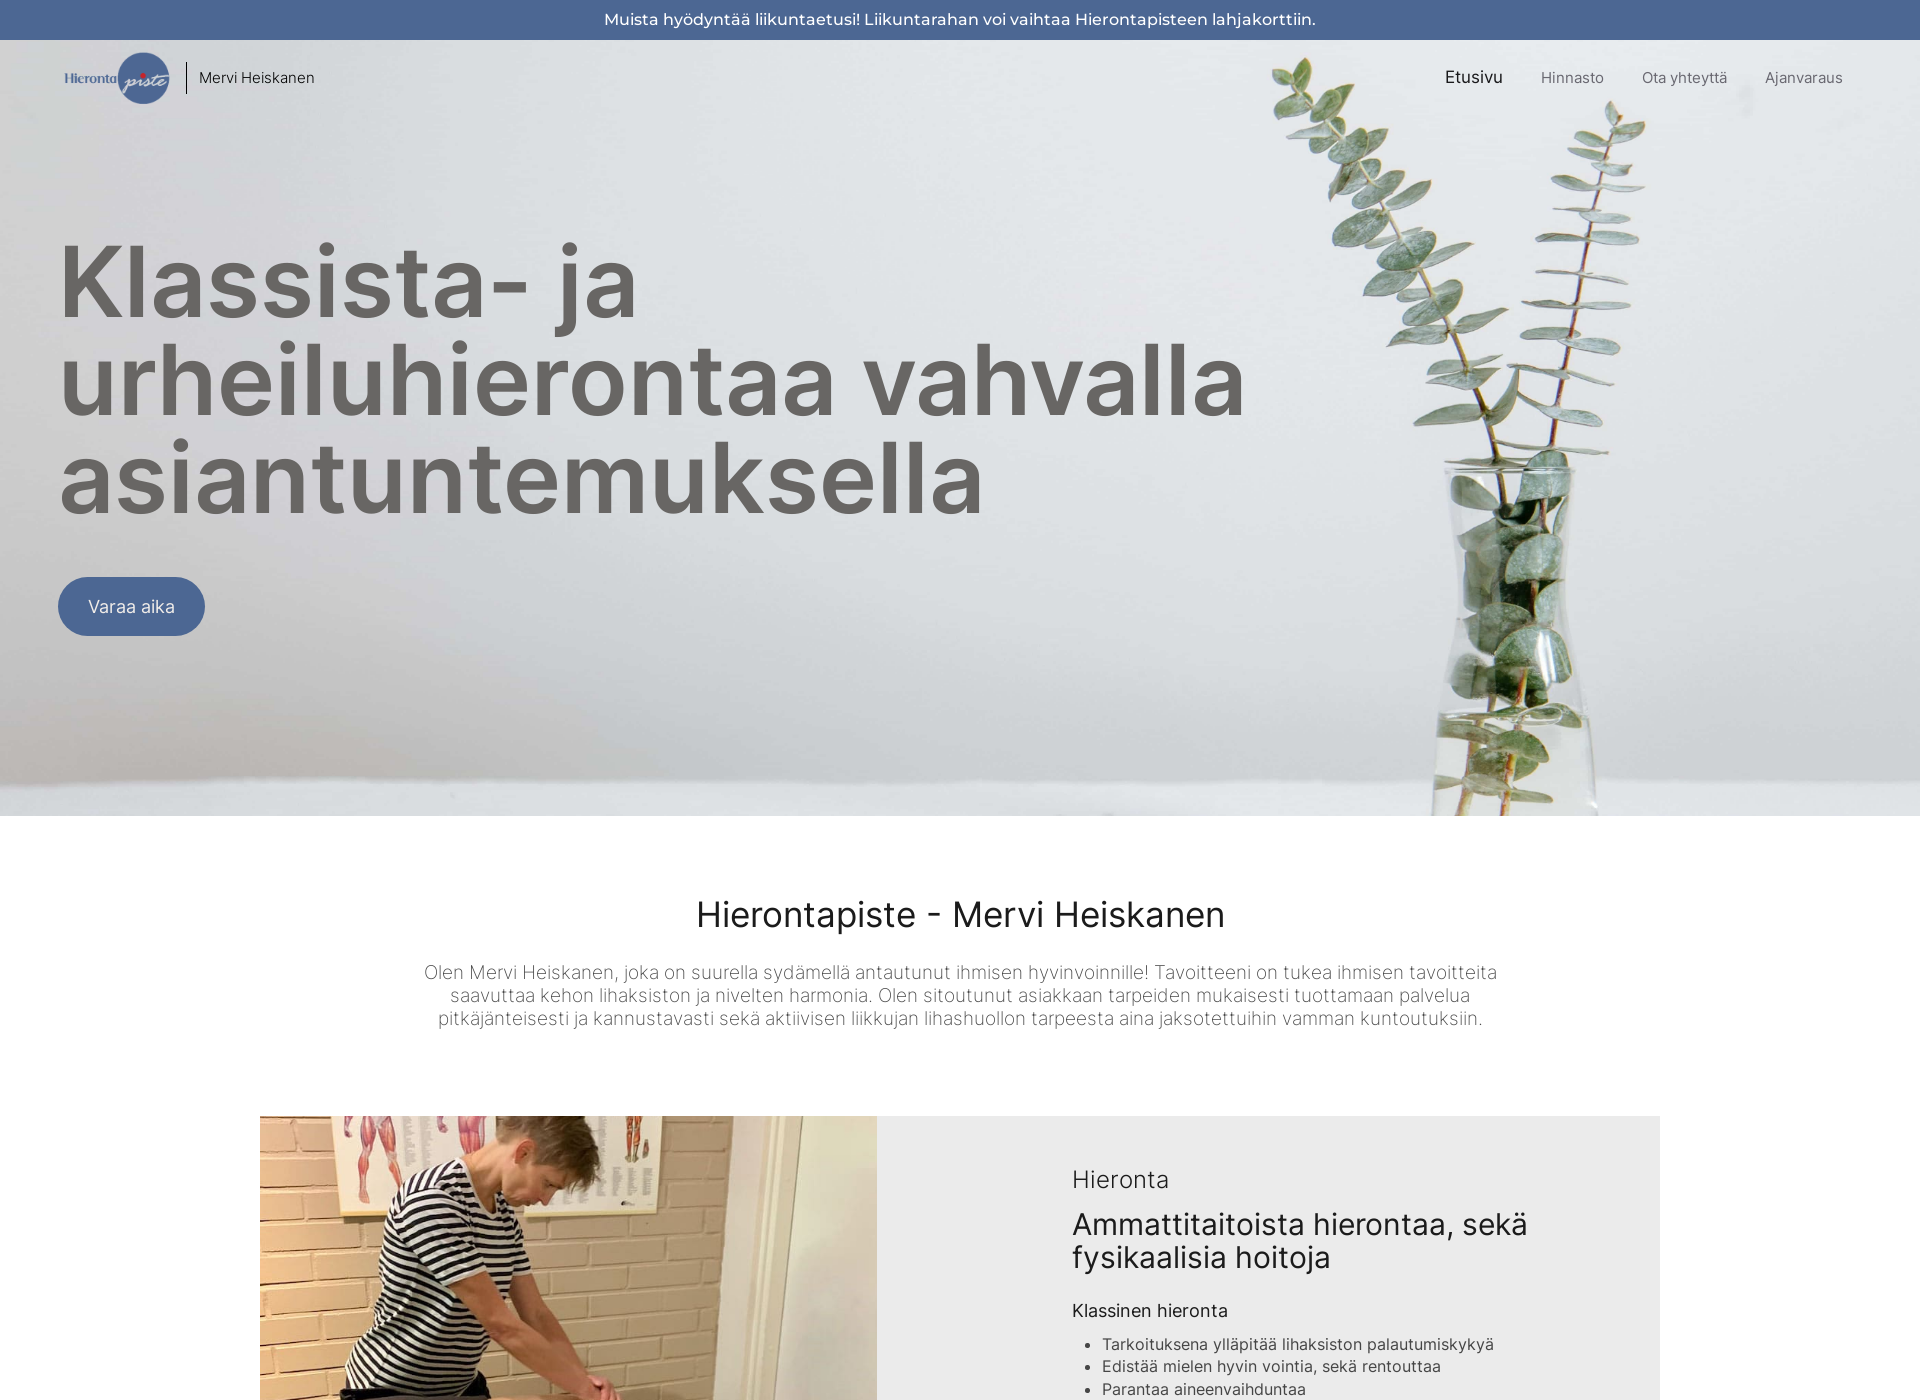 Näyttökuva hierontapistemerviheiskanen.fi